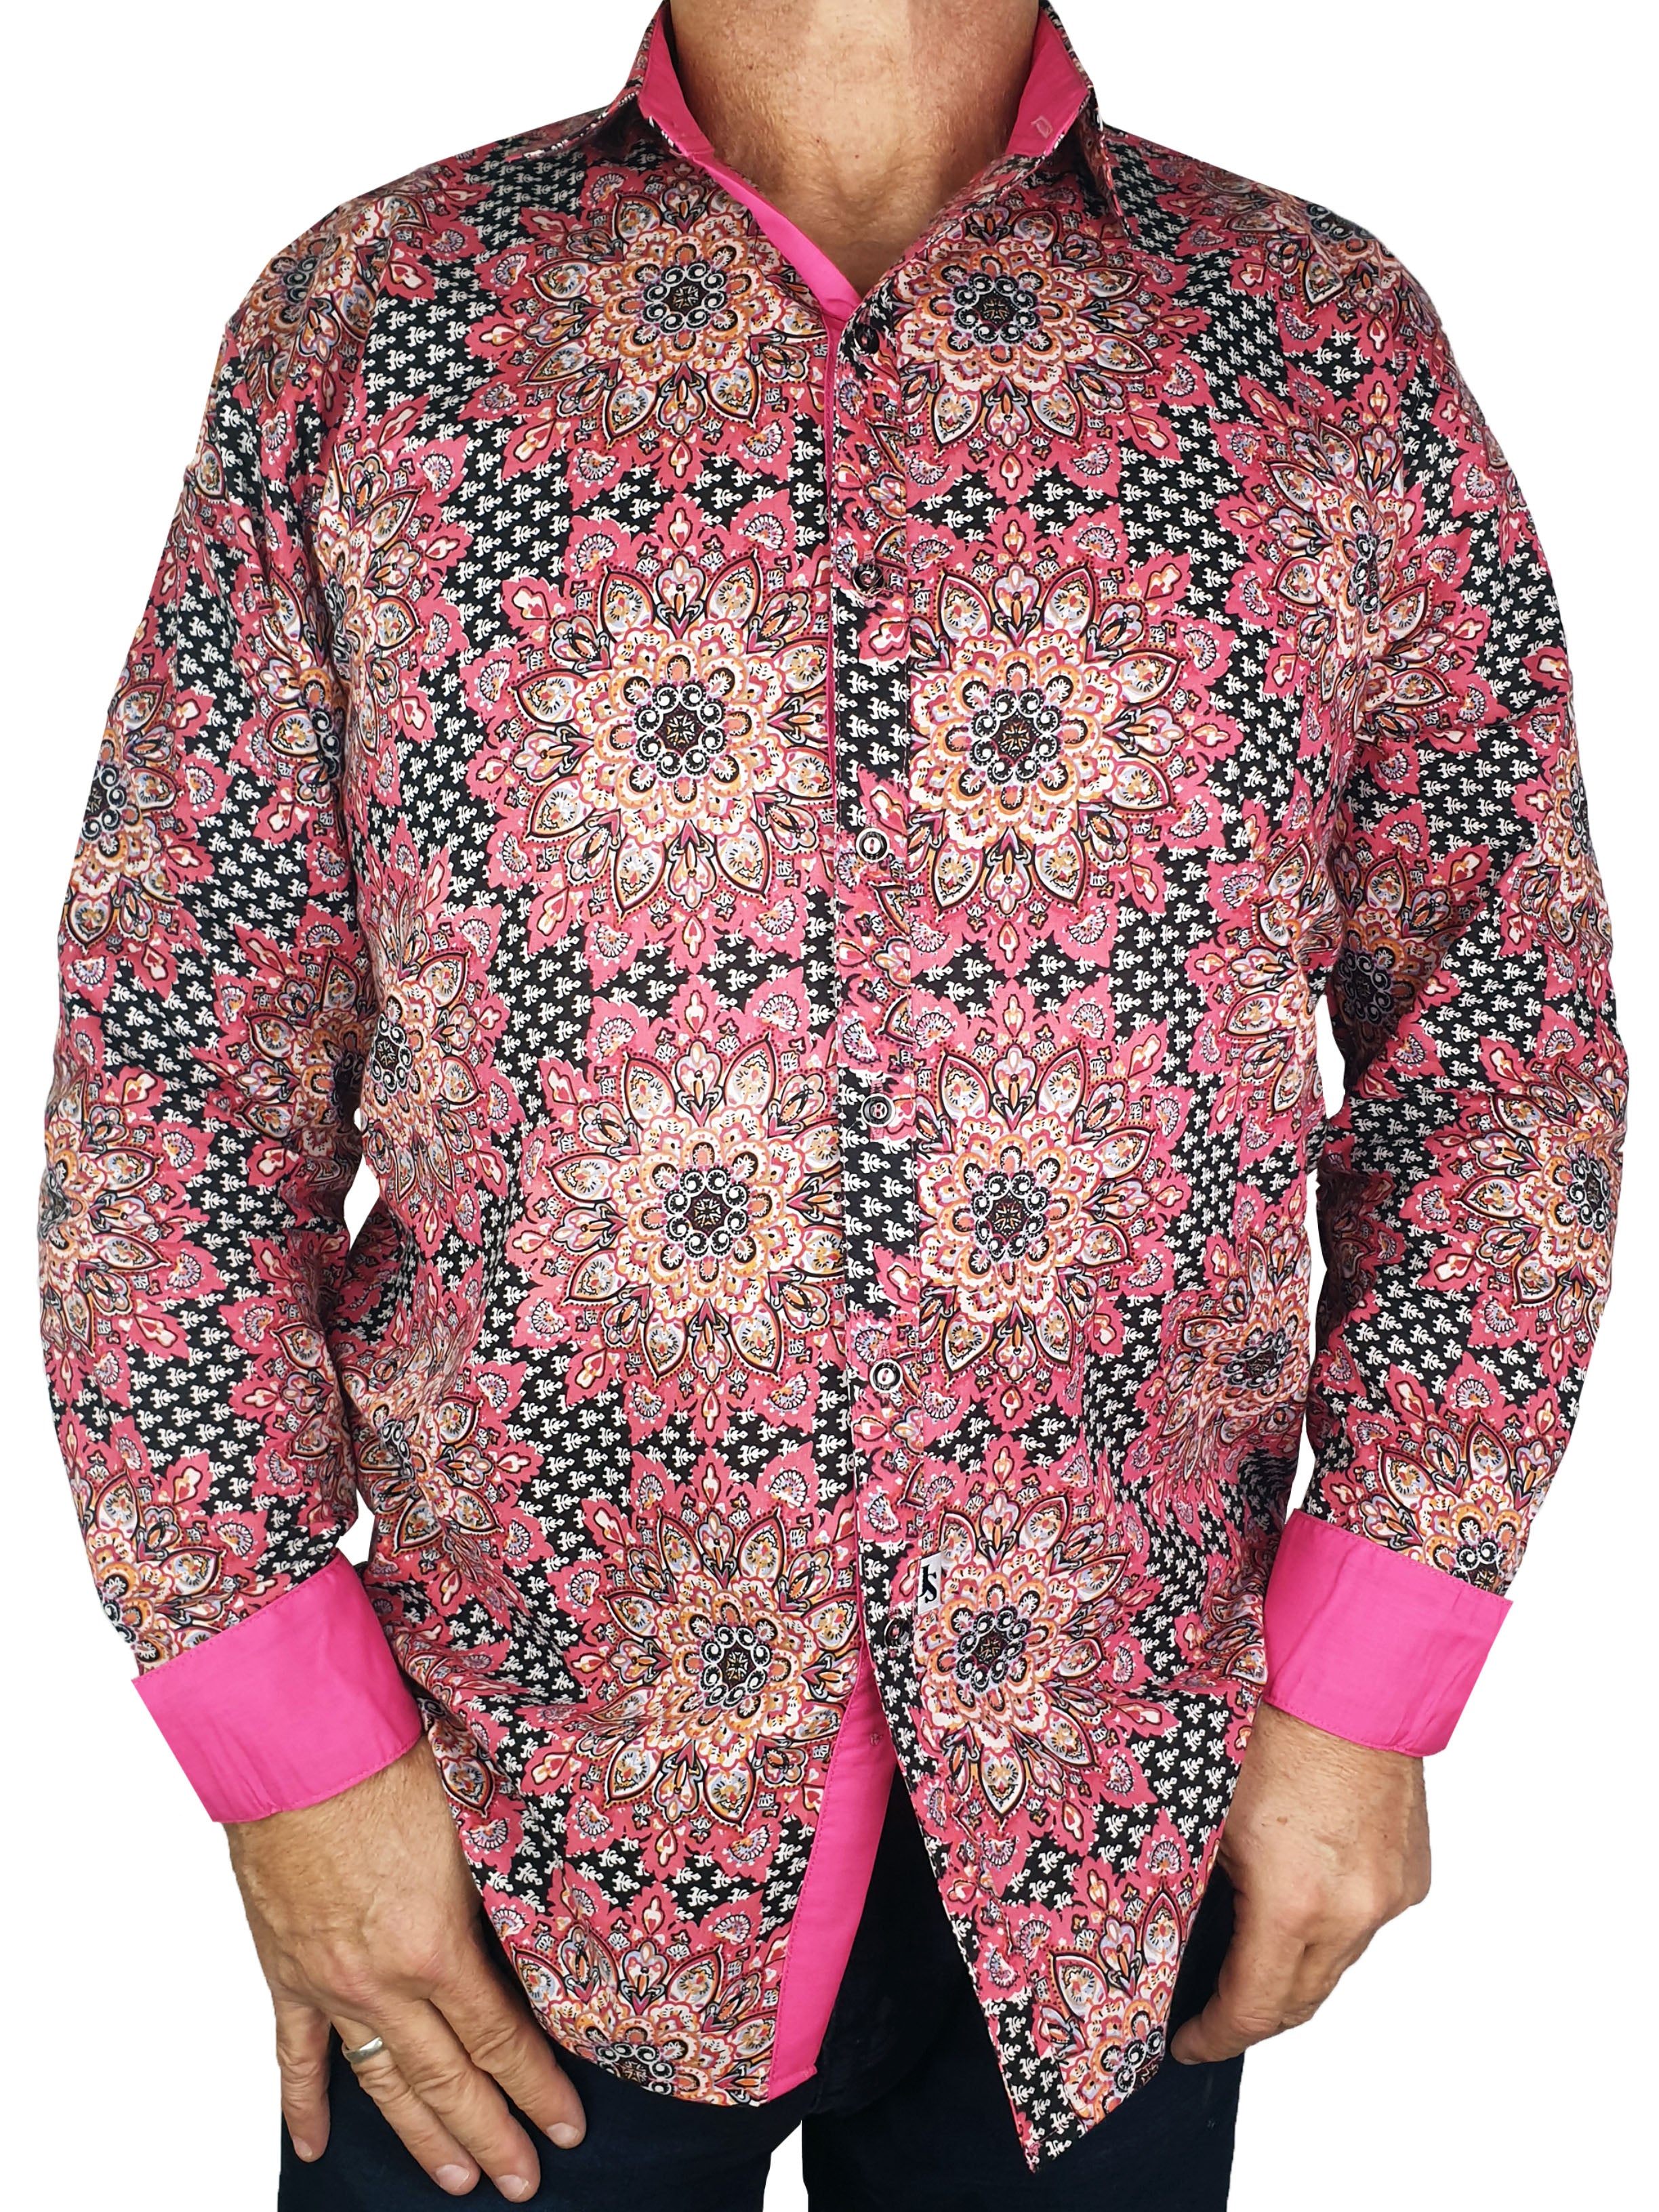 Mandala Abstract Cotton L/S Shirt - Pink